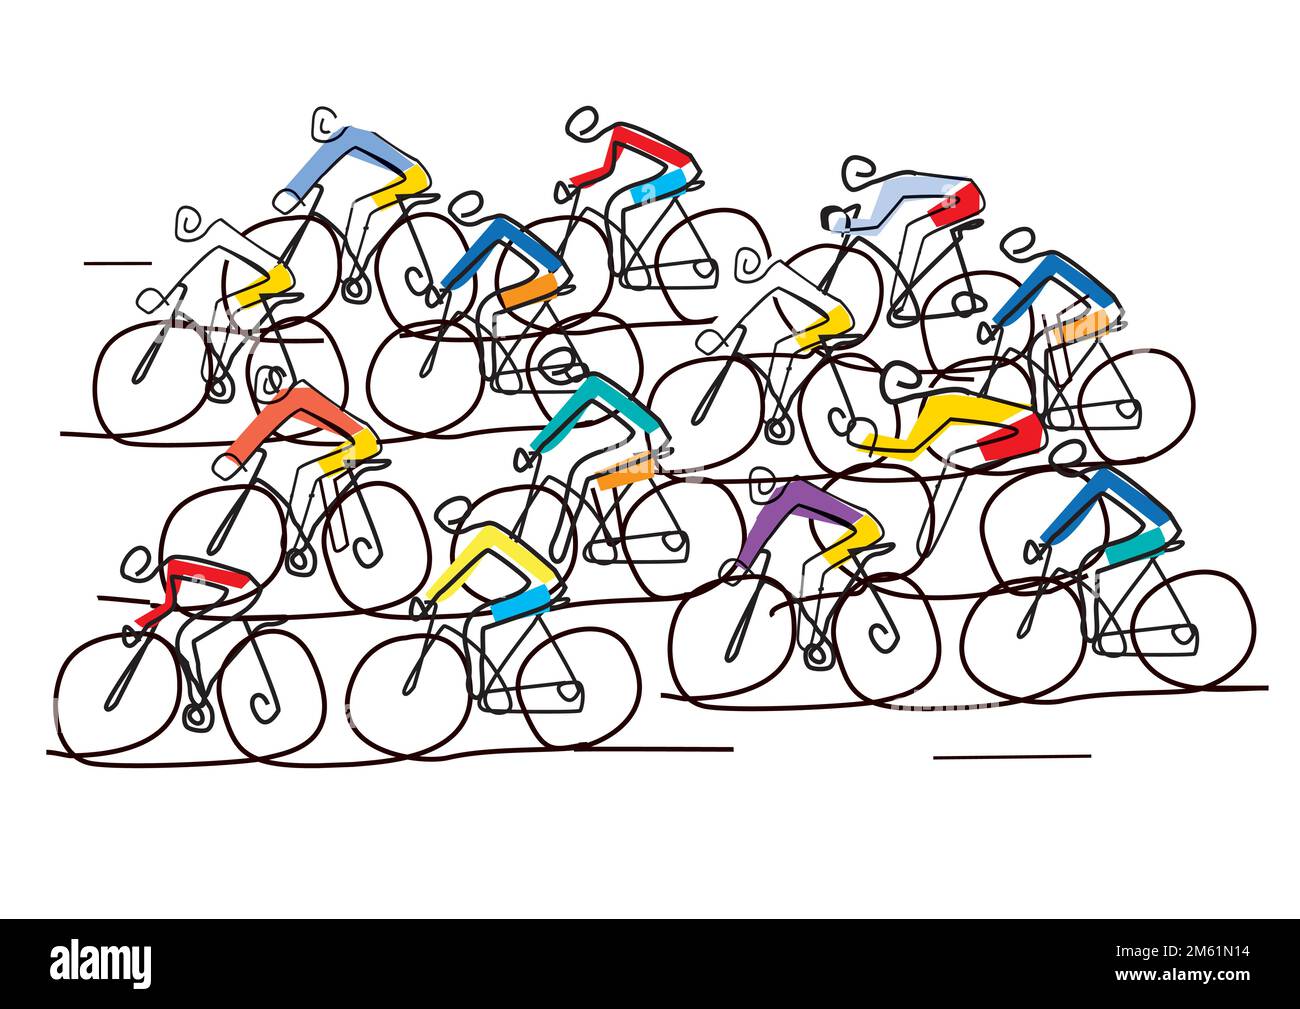 Radfahrer Peloton, Radrennen, Linienkunst stilisiert. Darstellung einer Gruppe von Radfahrern auf einer Straße. Durchgehende Linienzeichnung. Vektor verfügbar. Stock Vektor